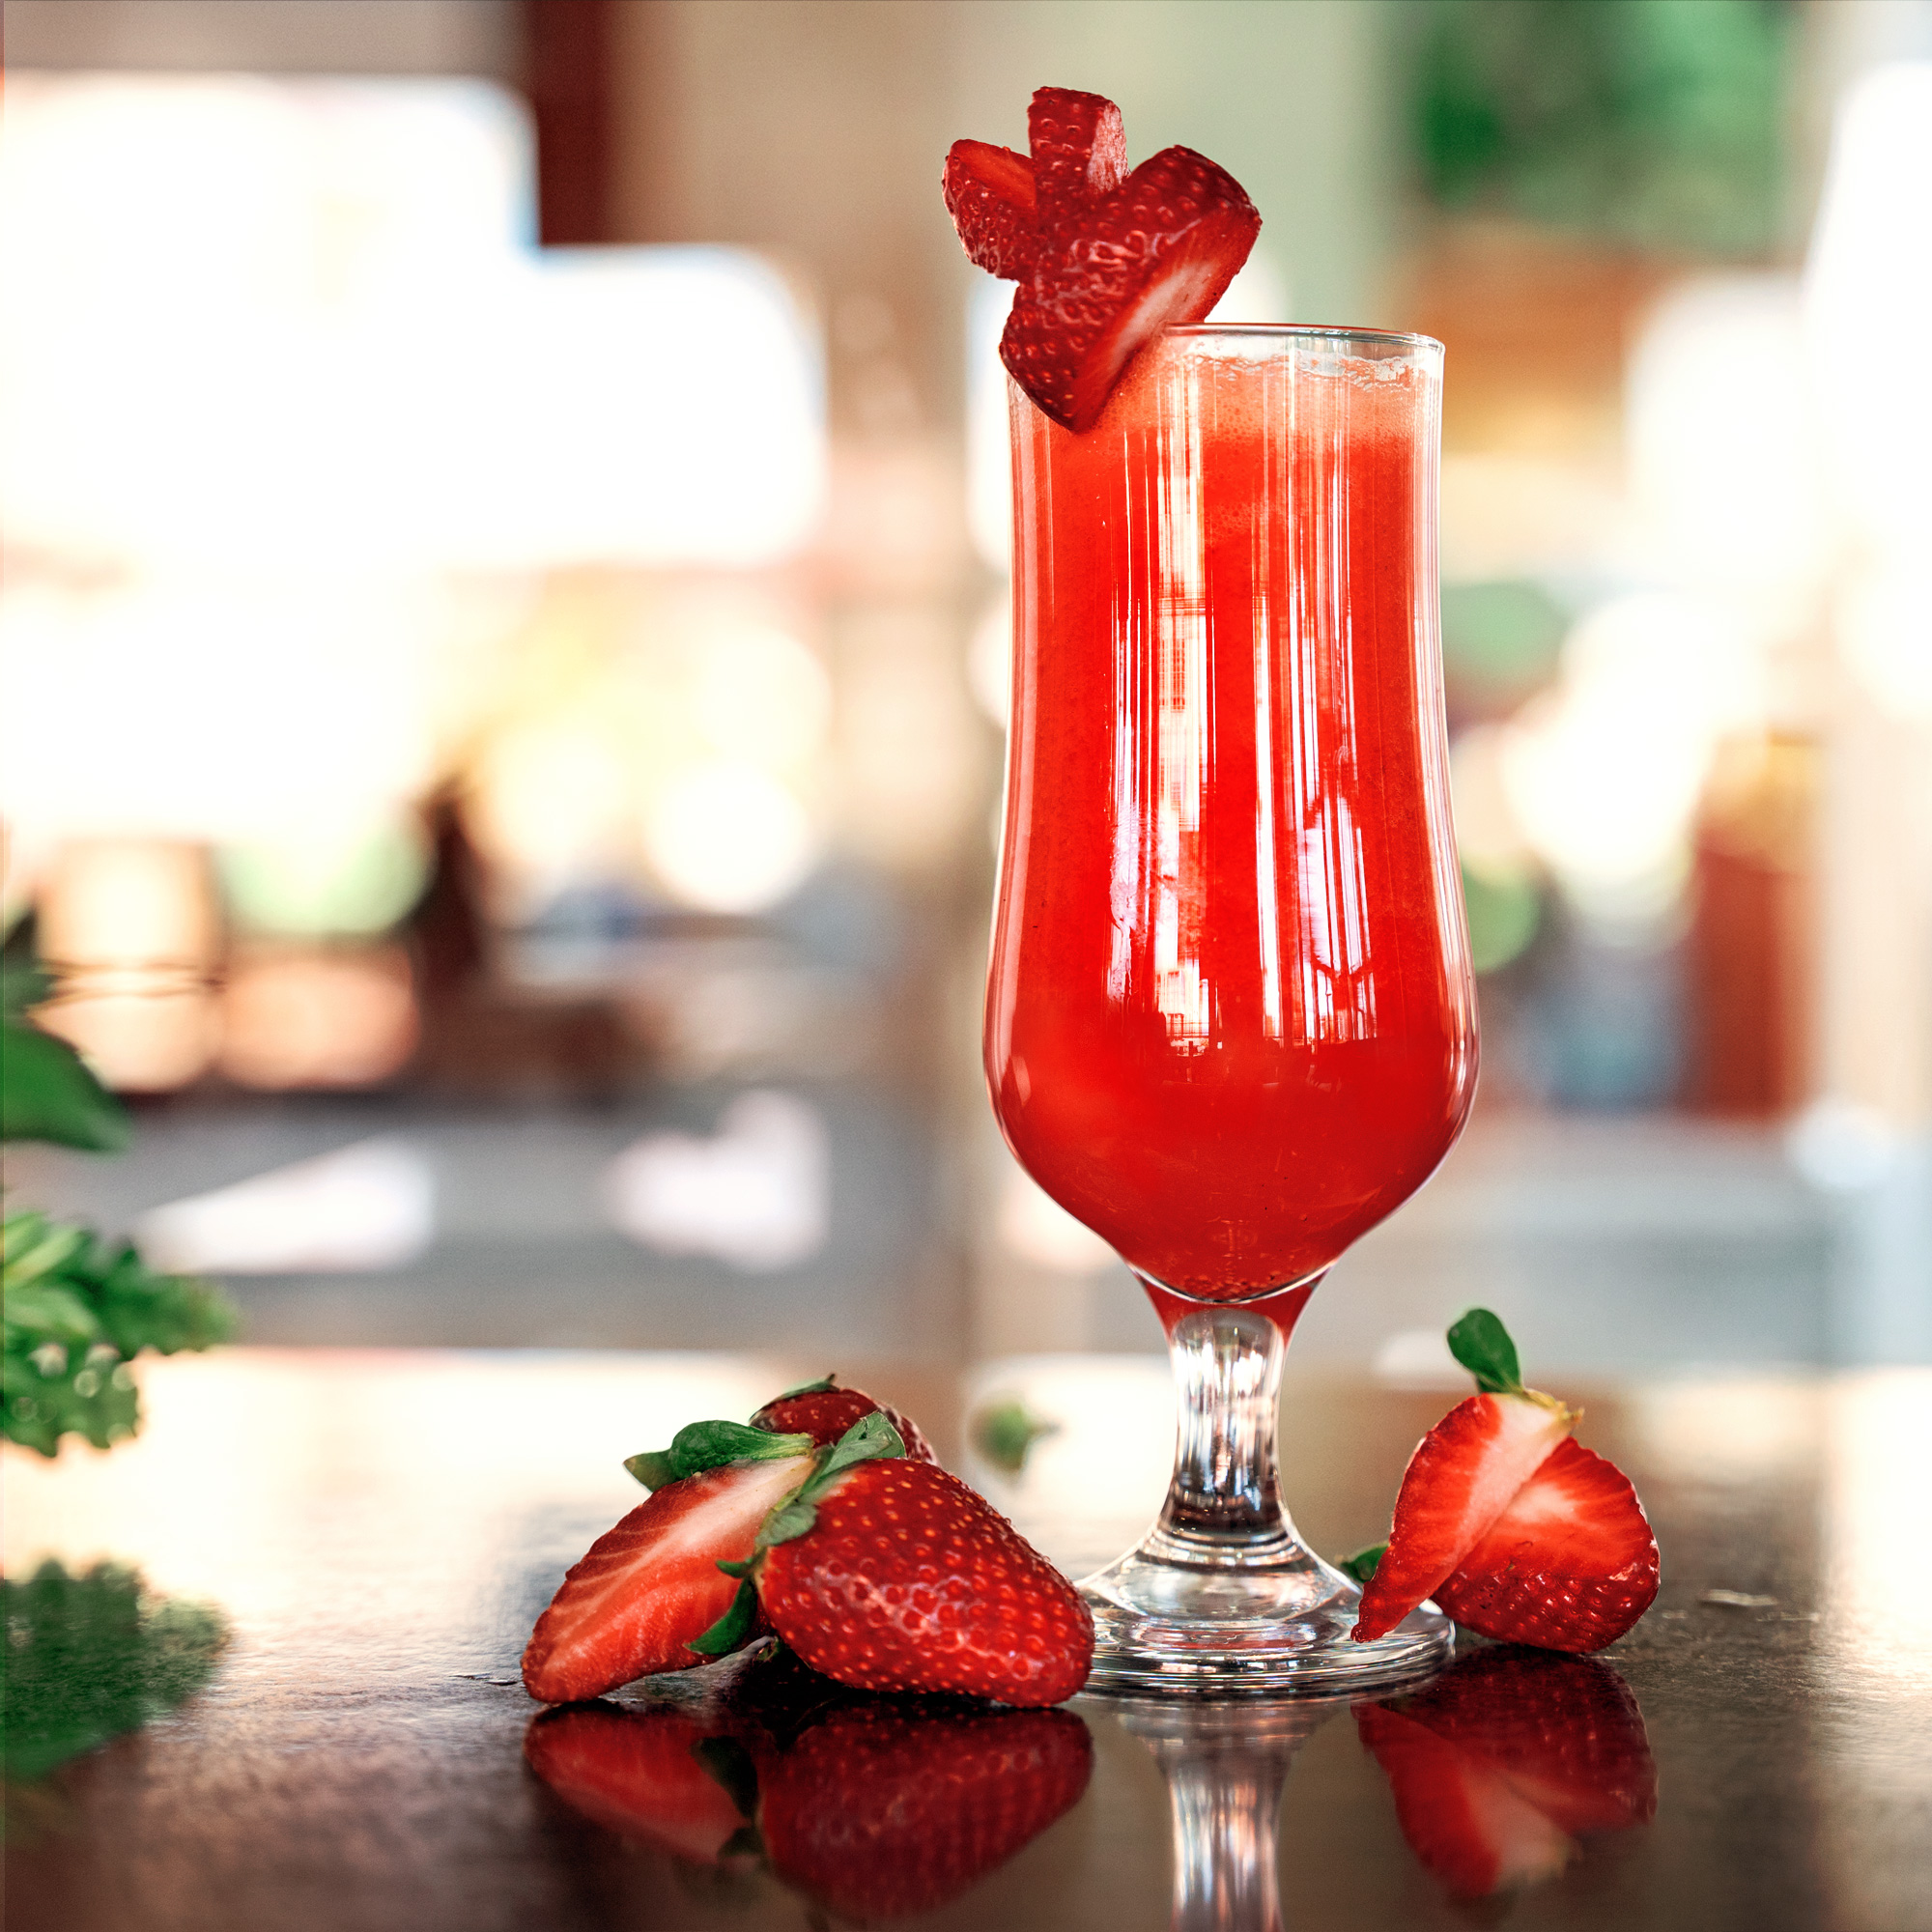 strawberry-juice